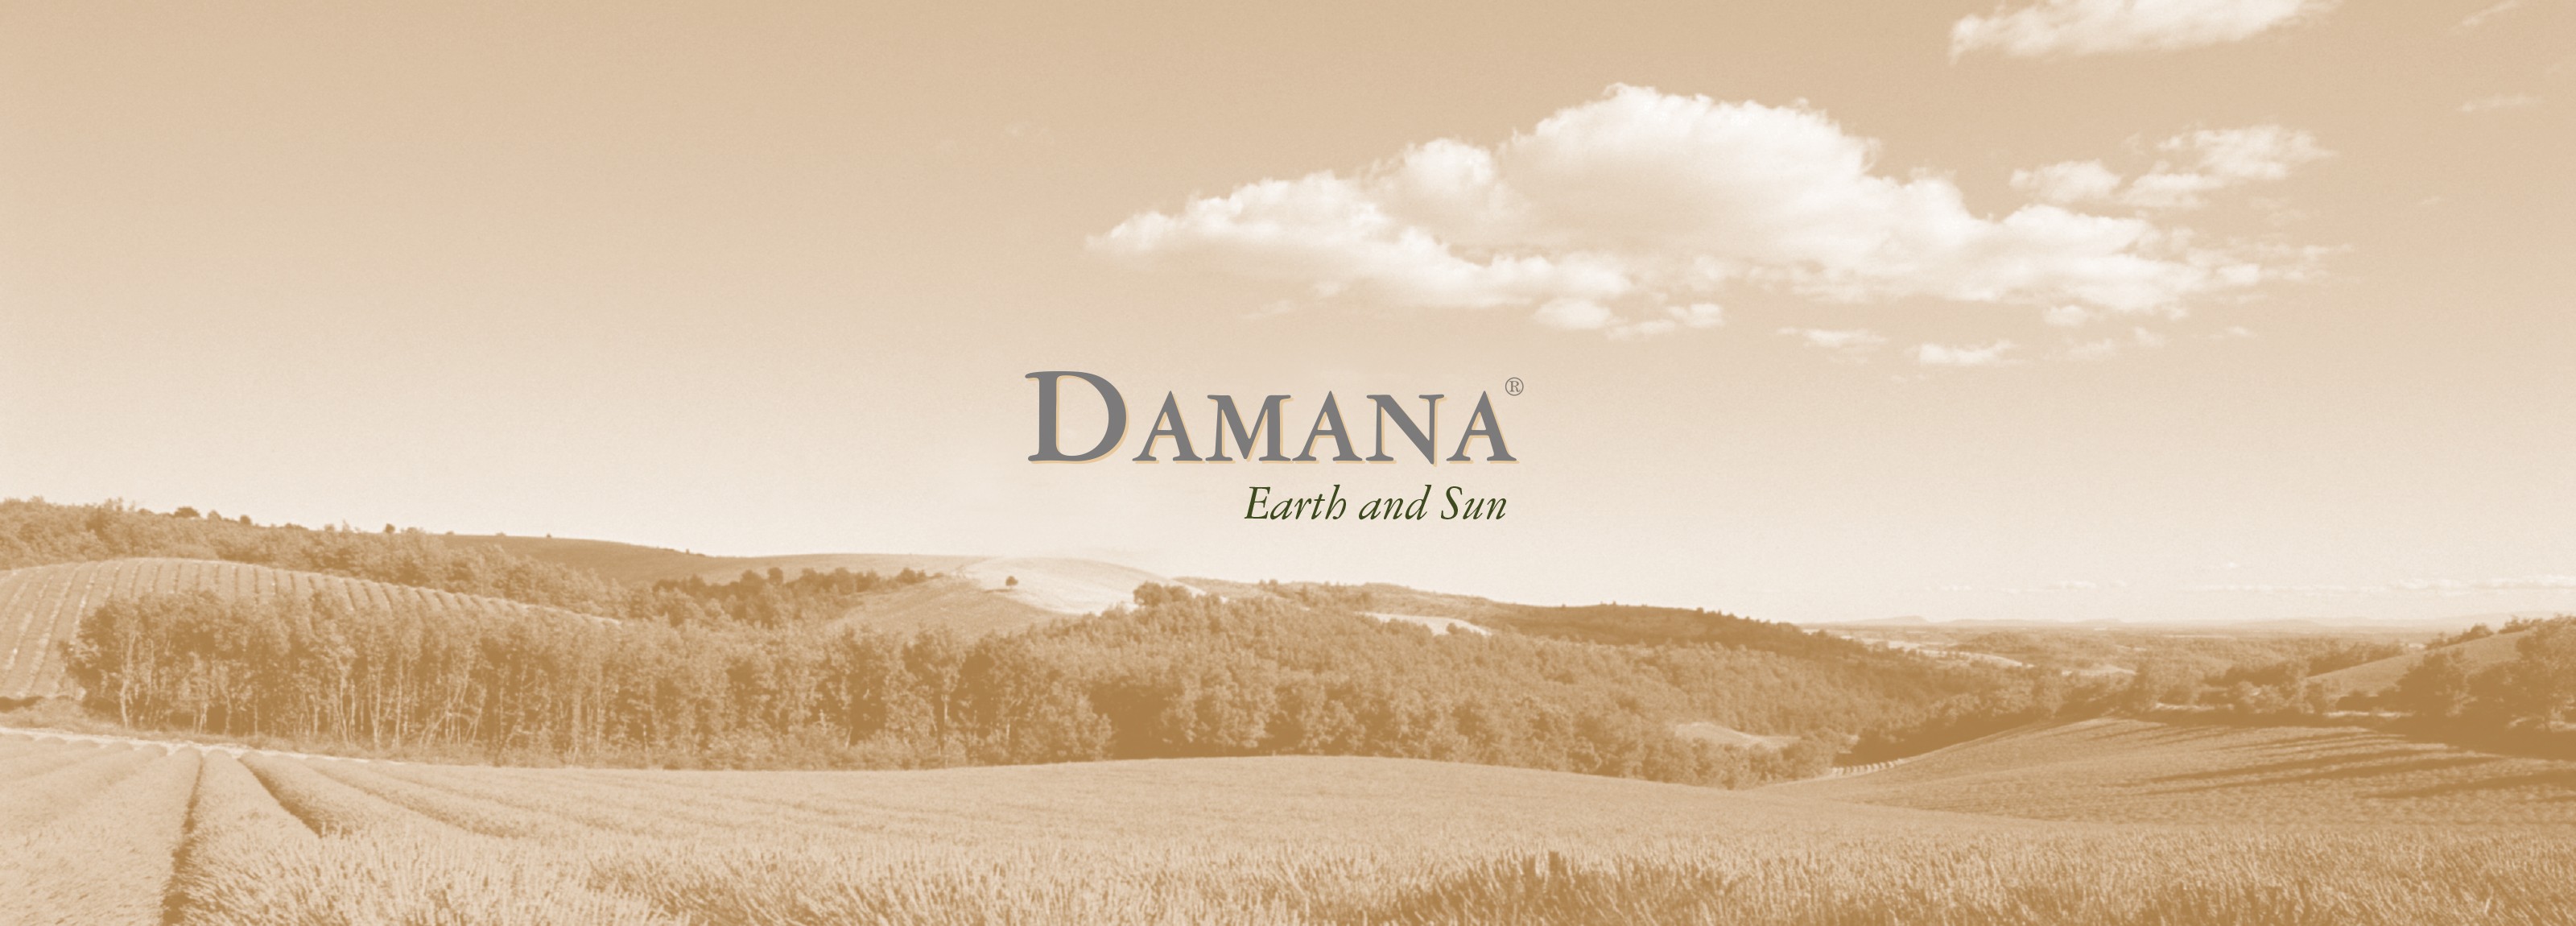 damana logo